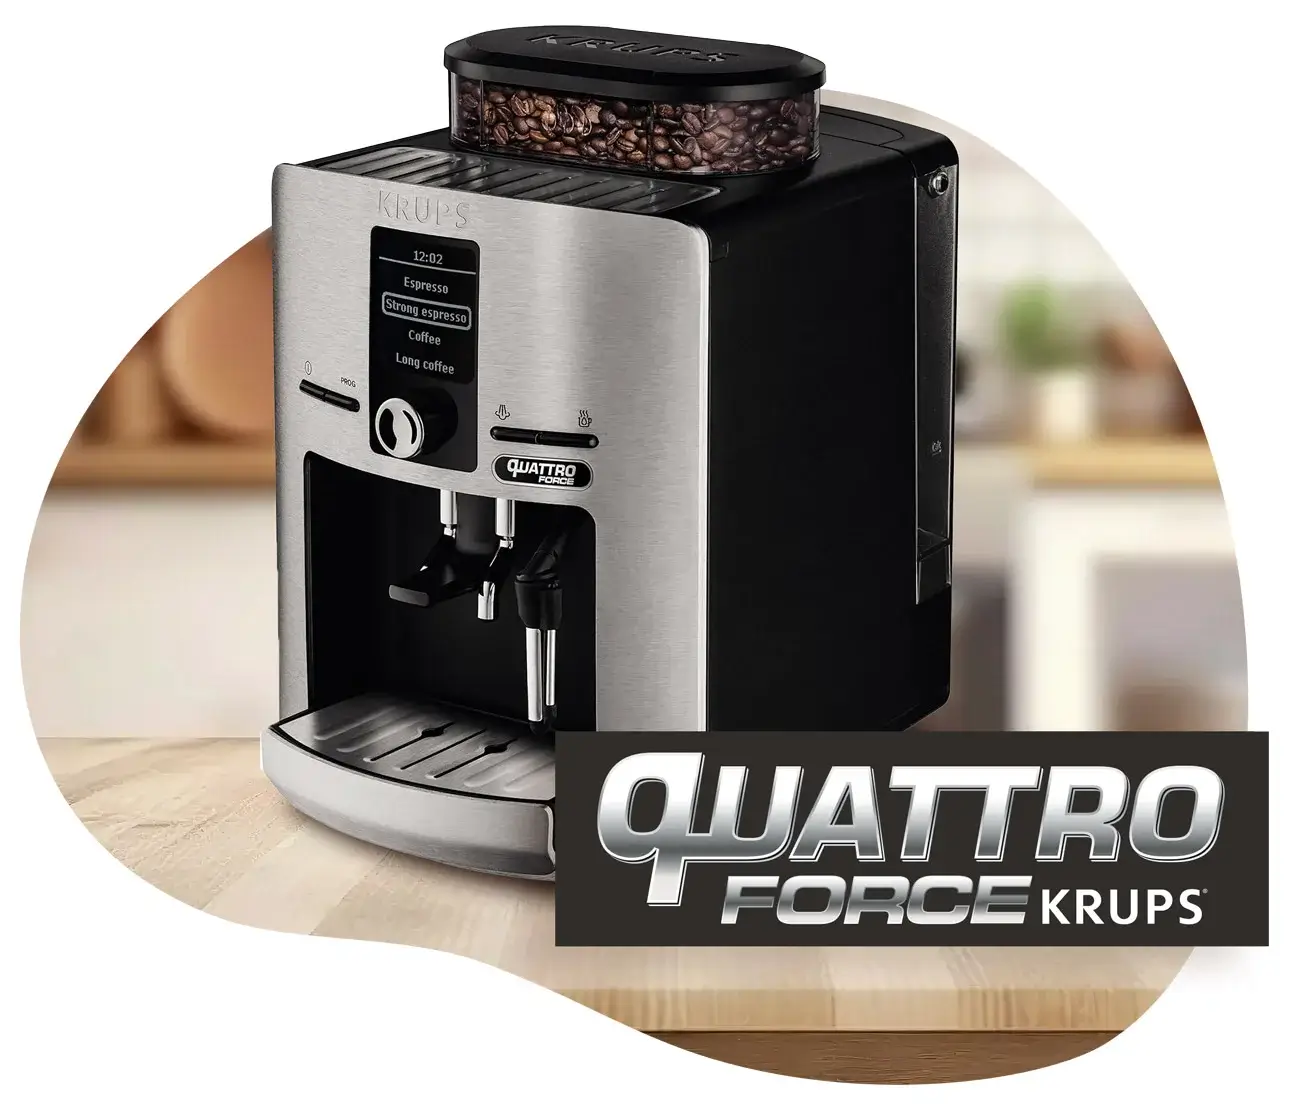 Communication biens d'équipement : Logo Krups Quattro Force